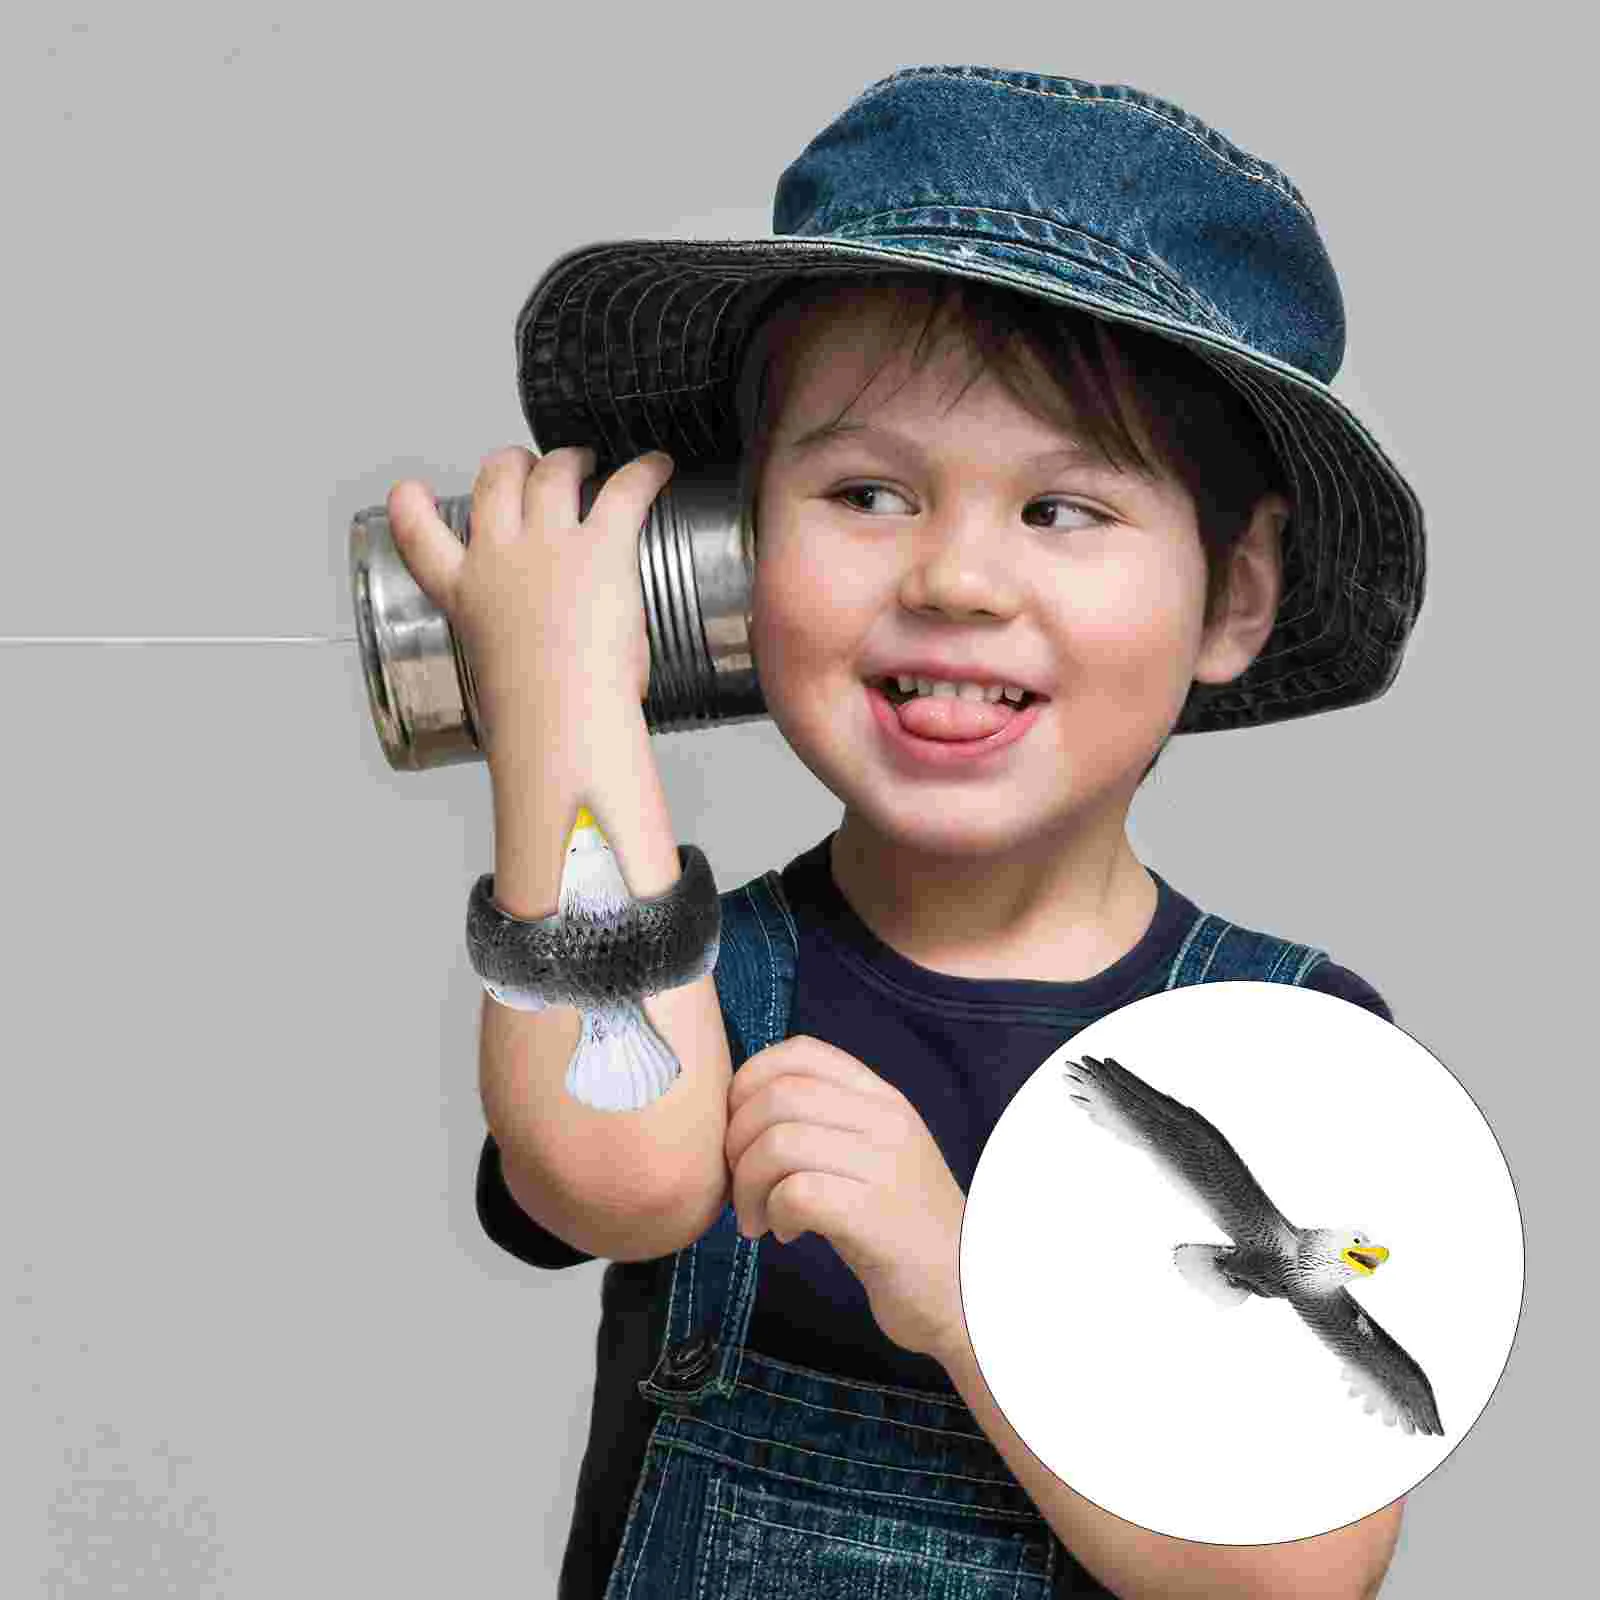 

Bracelet Stress Reducing Ring Party Favor Slap Bands Wrist Eagle Bracelets Child